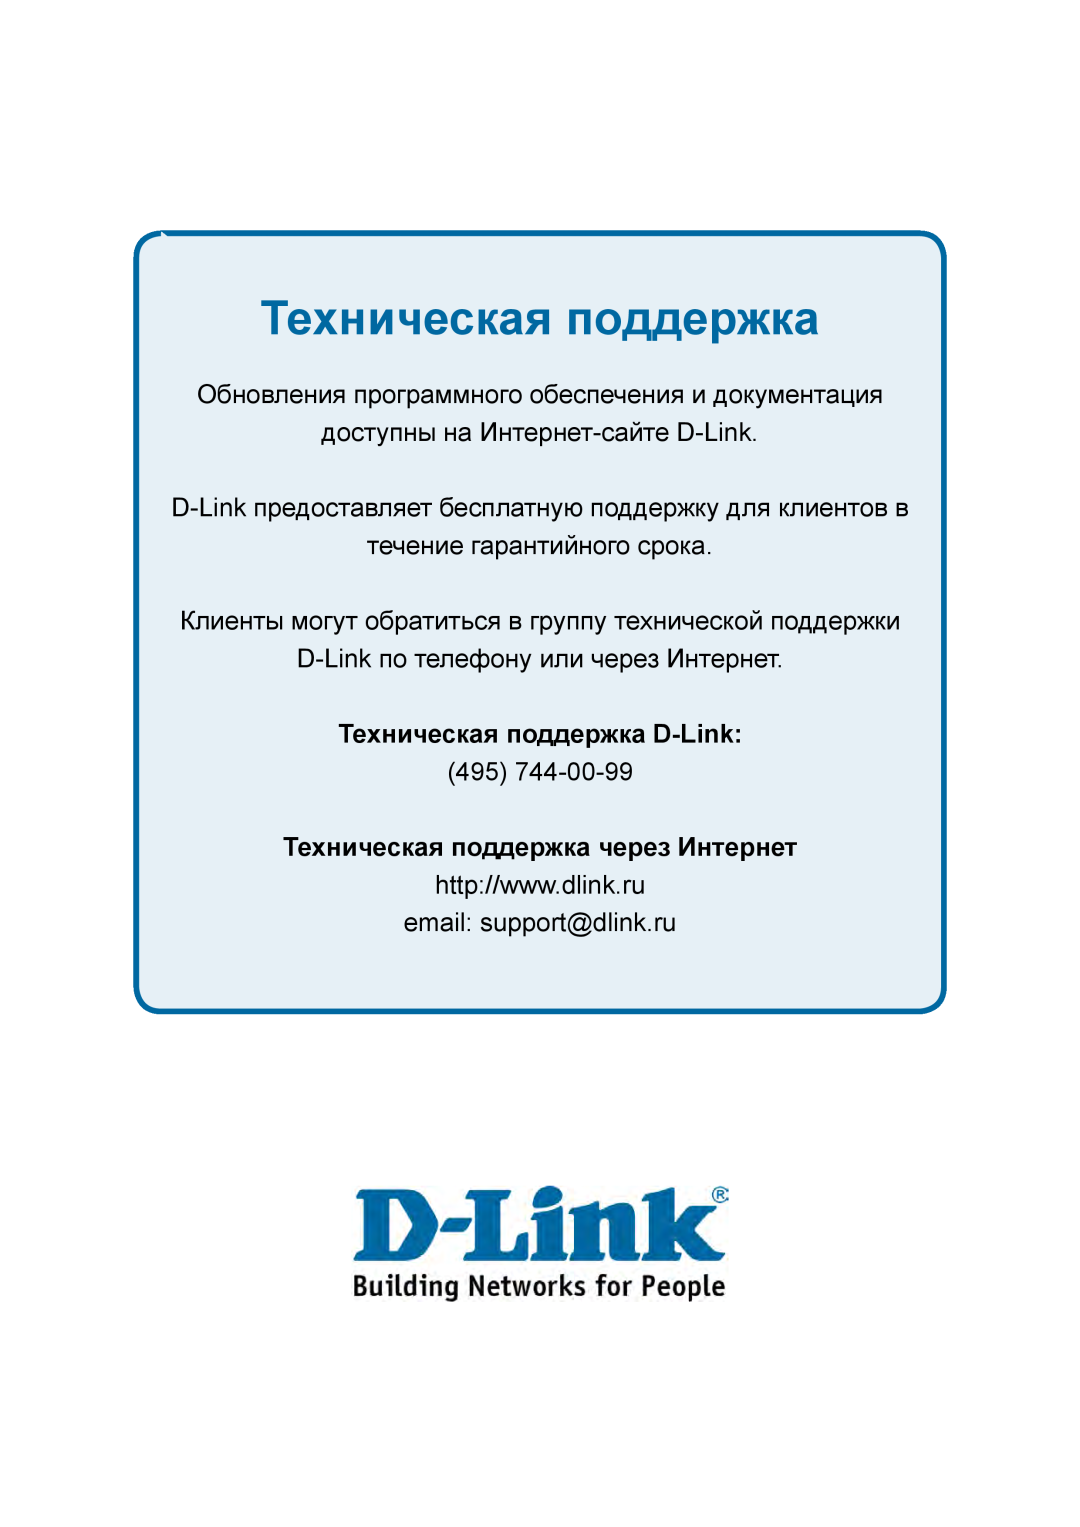 D-Link DES-1228P Техническая поддержка, Обновления программного обеспечения и документация, течение гарантийного срока 